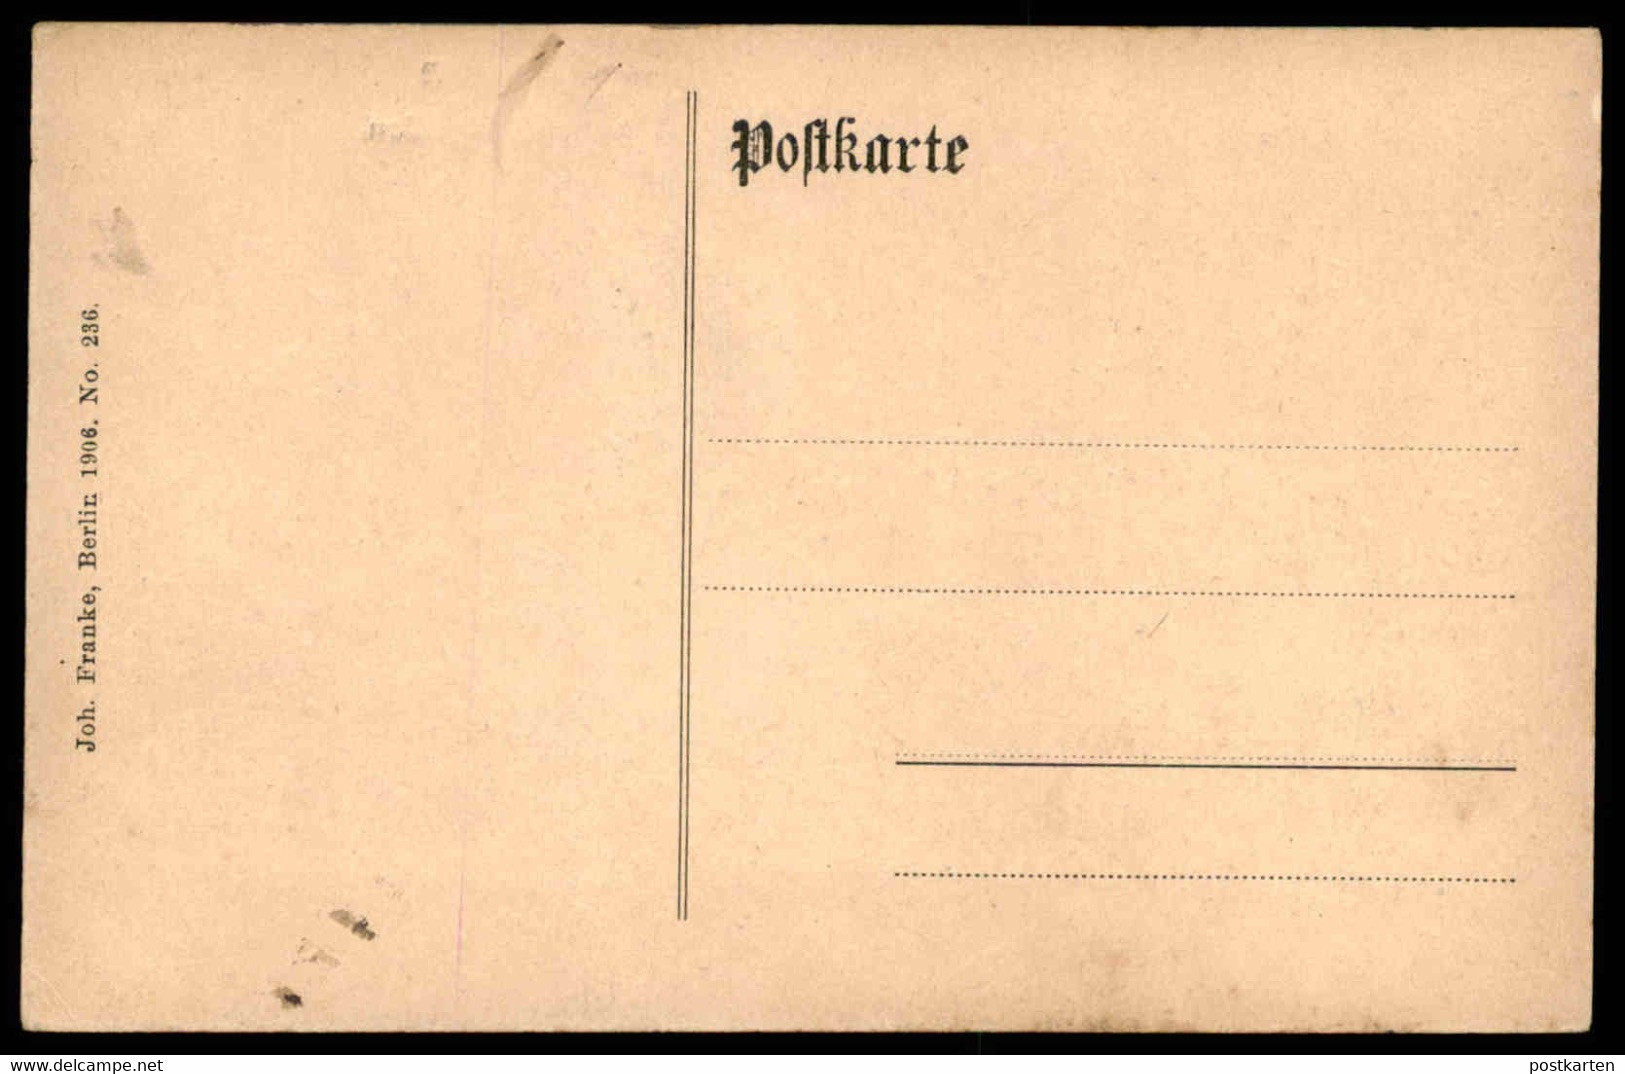 ALTE POSTKARTE BERLIN WANNSEE DAMPFSCHIFFSTATION BOOTE PASSAGIERE SEE Steg Ansichtskarte AK Cpa Postcard - Wannsee